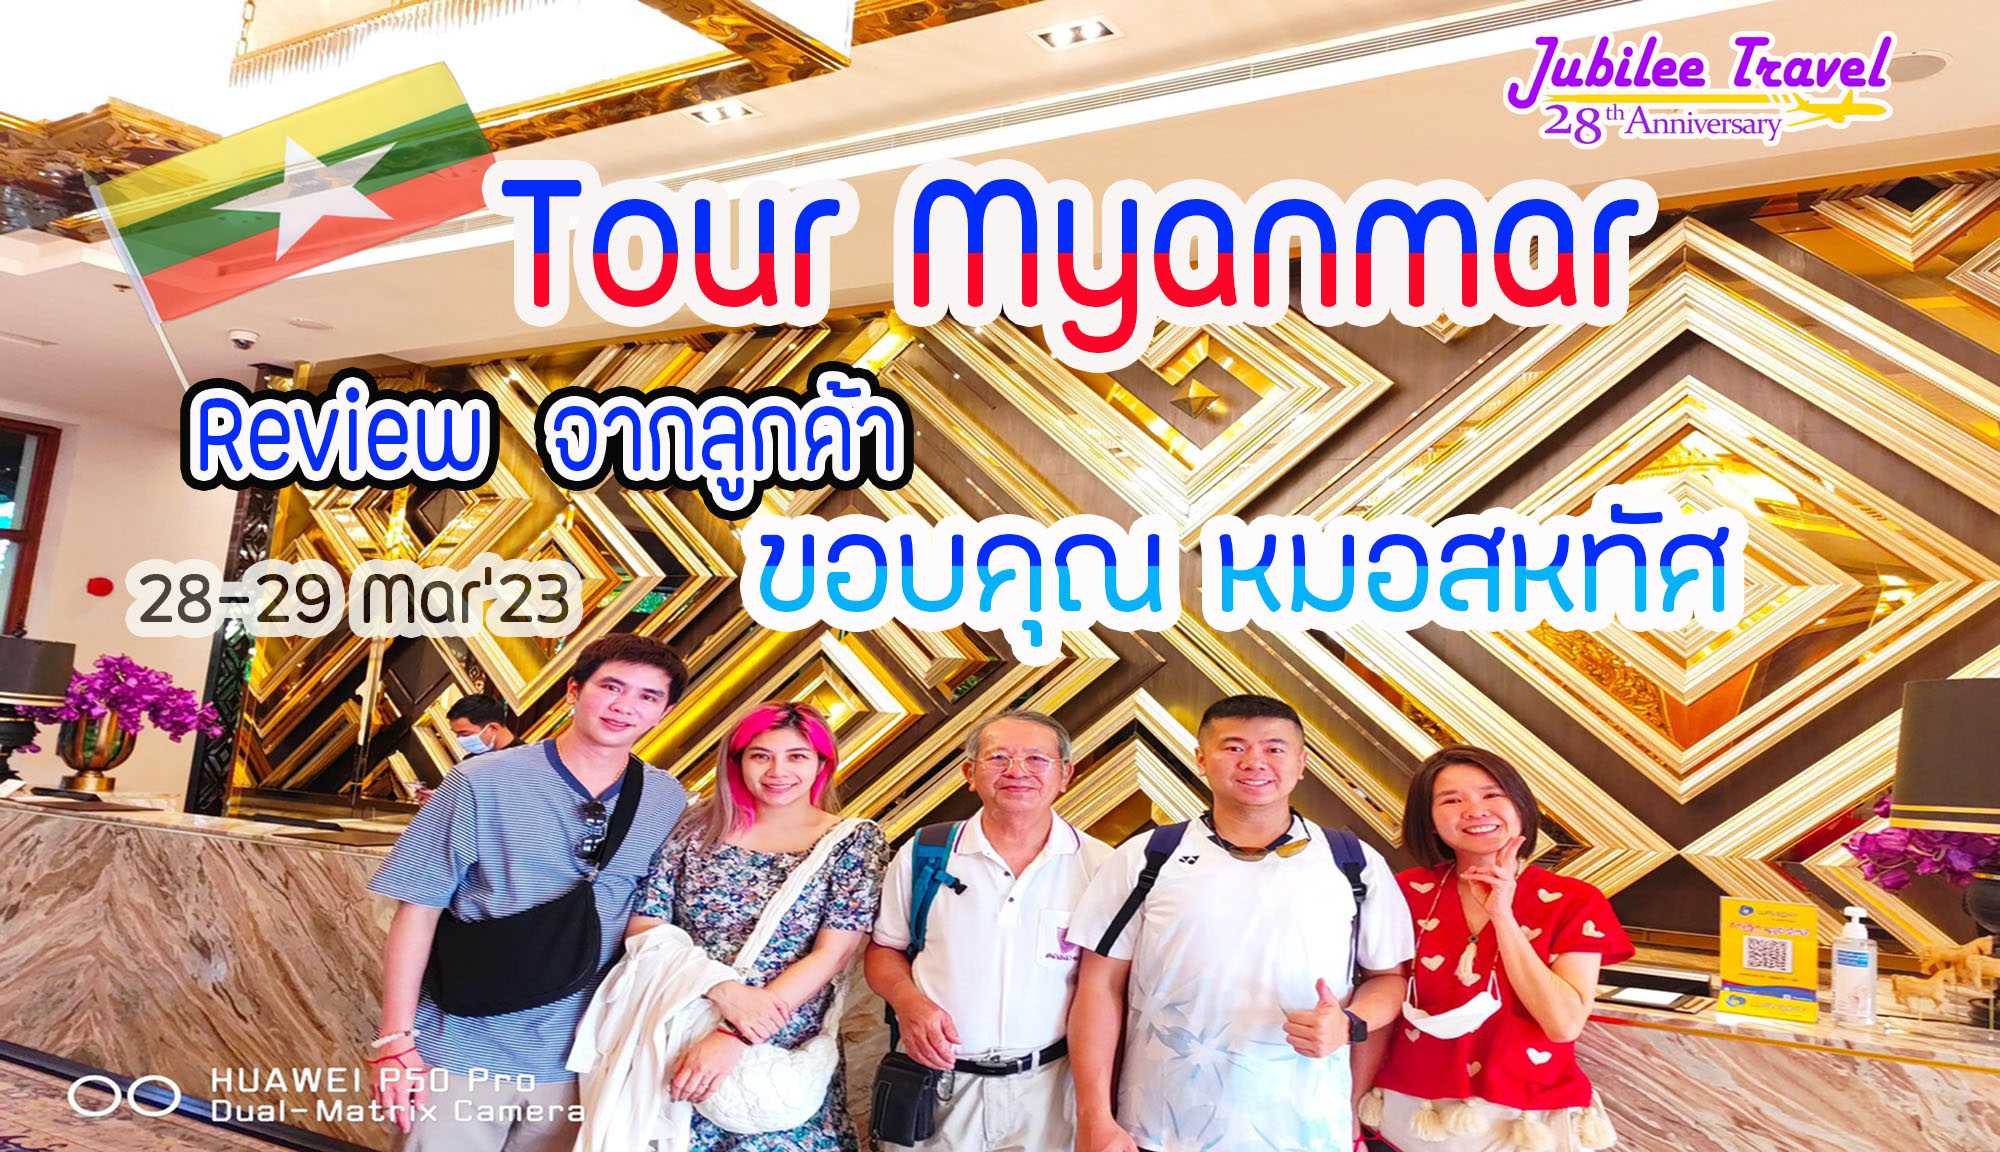 รีวิว ขอบคุณ หมอสหทัศ Tour Myanmar 28-29 Mar’ 23